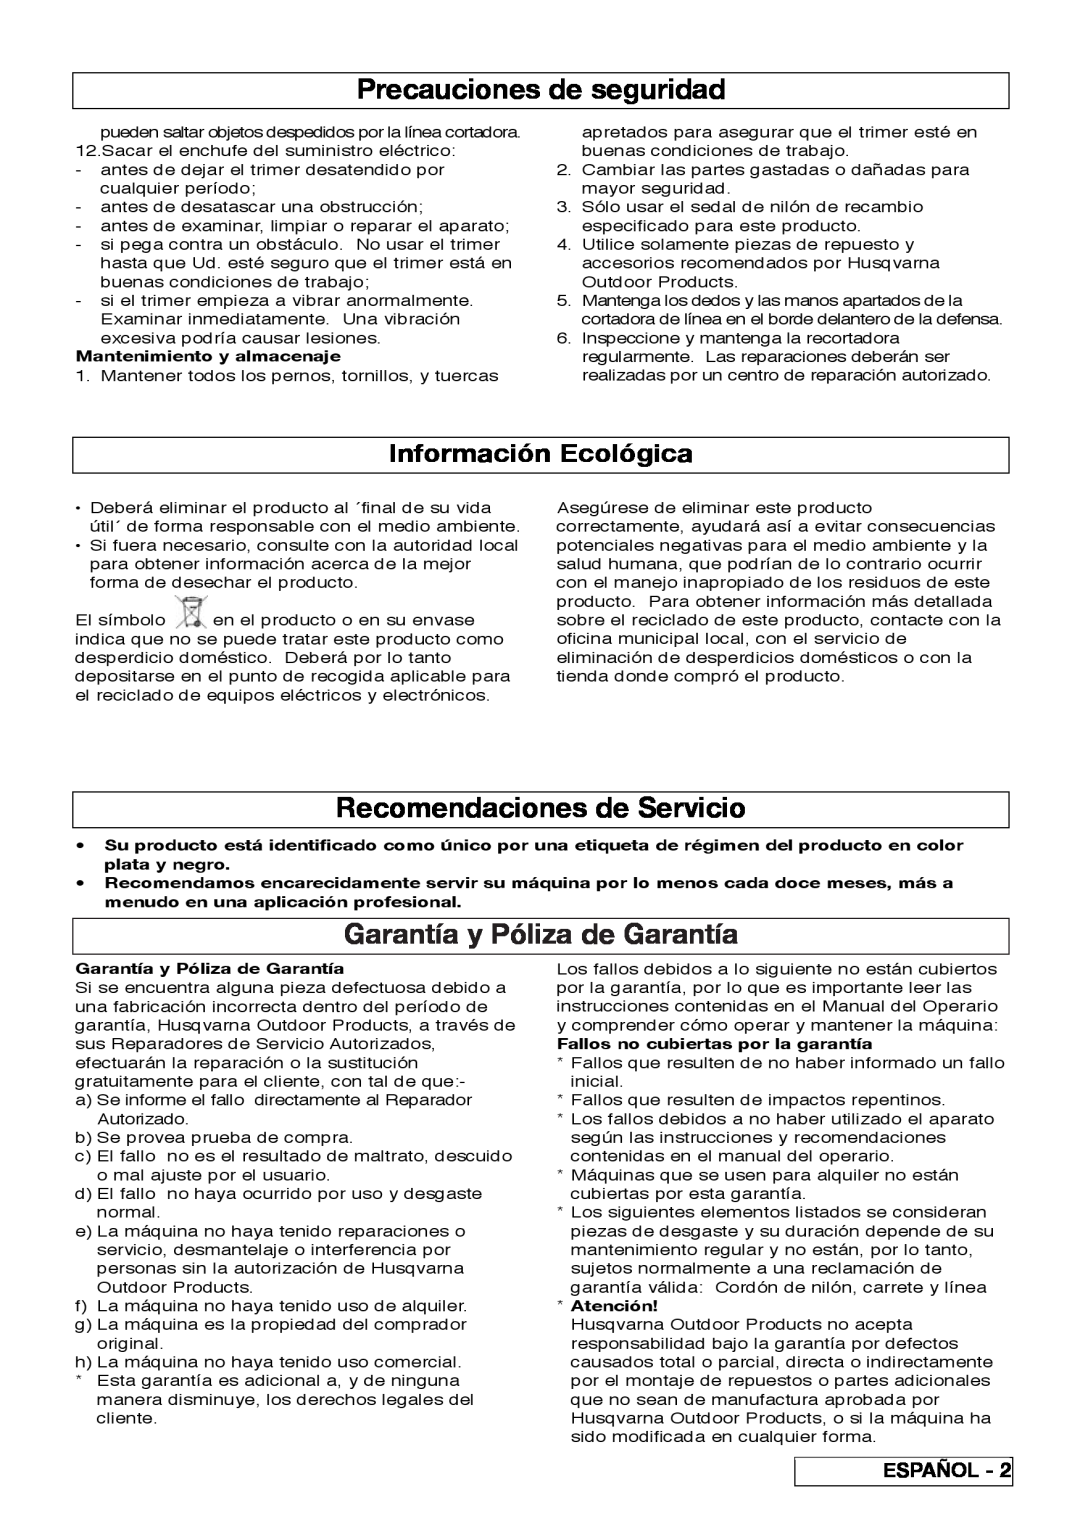 Flymo 800/1000 Precauciones de seguridad, Recomendaciones de Servicio, Garantía y Póliza de Garantía, Español, Atención 